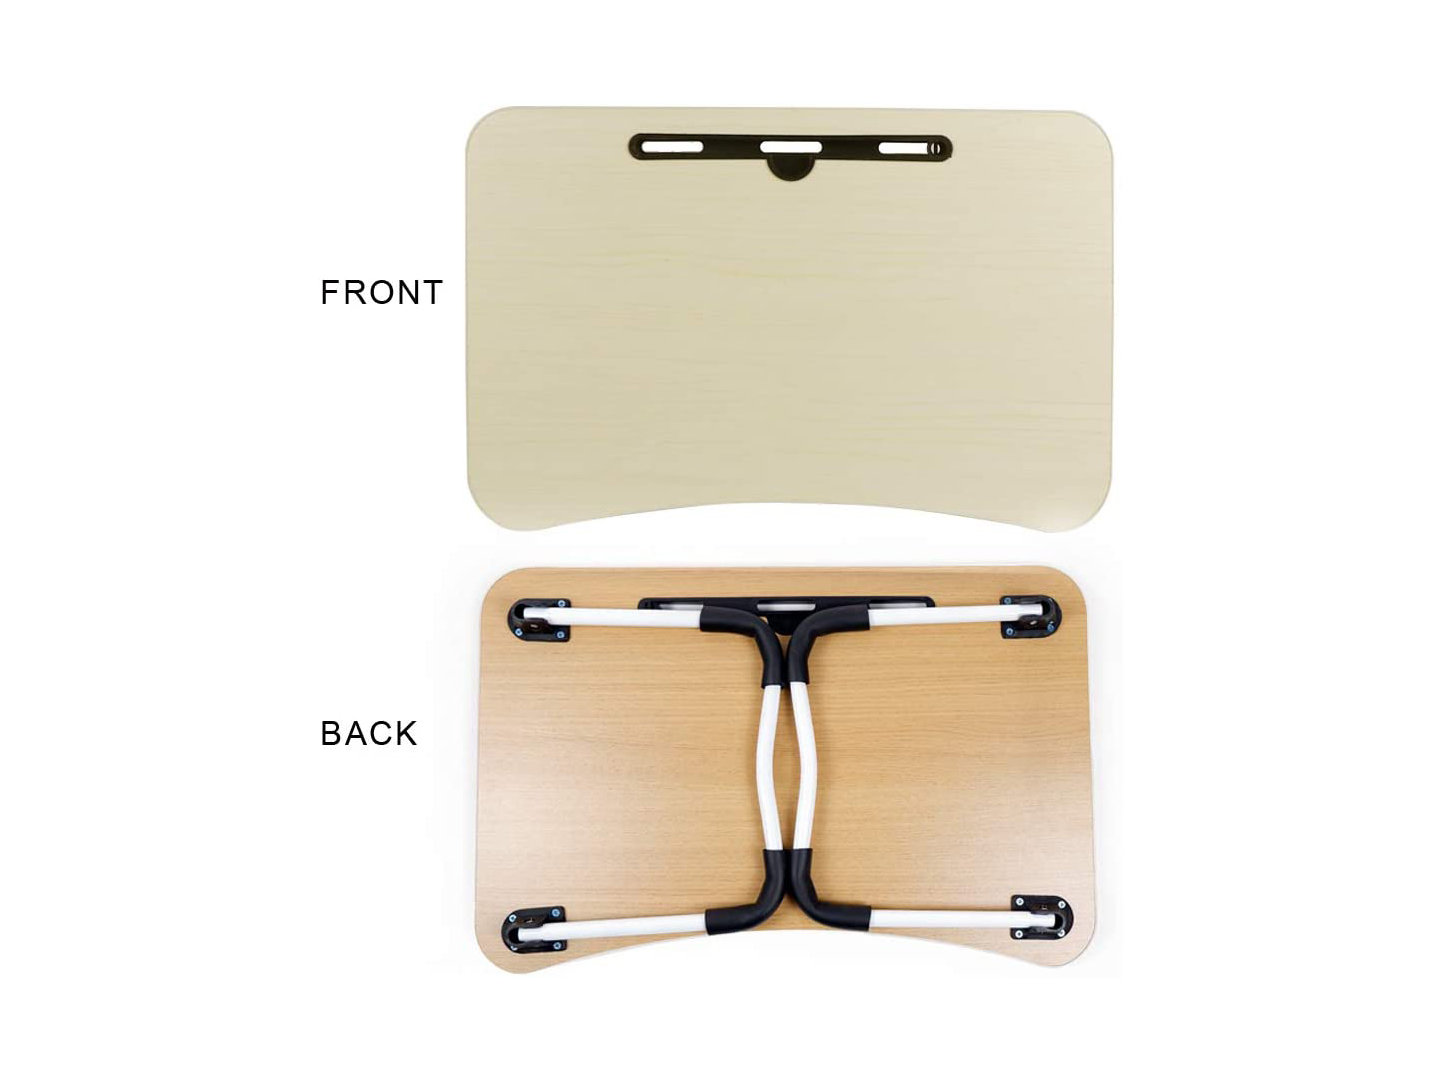 Faltbare Laptop-Bett Schreibtisch Tablette---€16.37